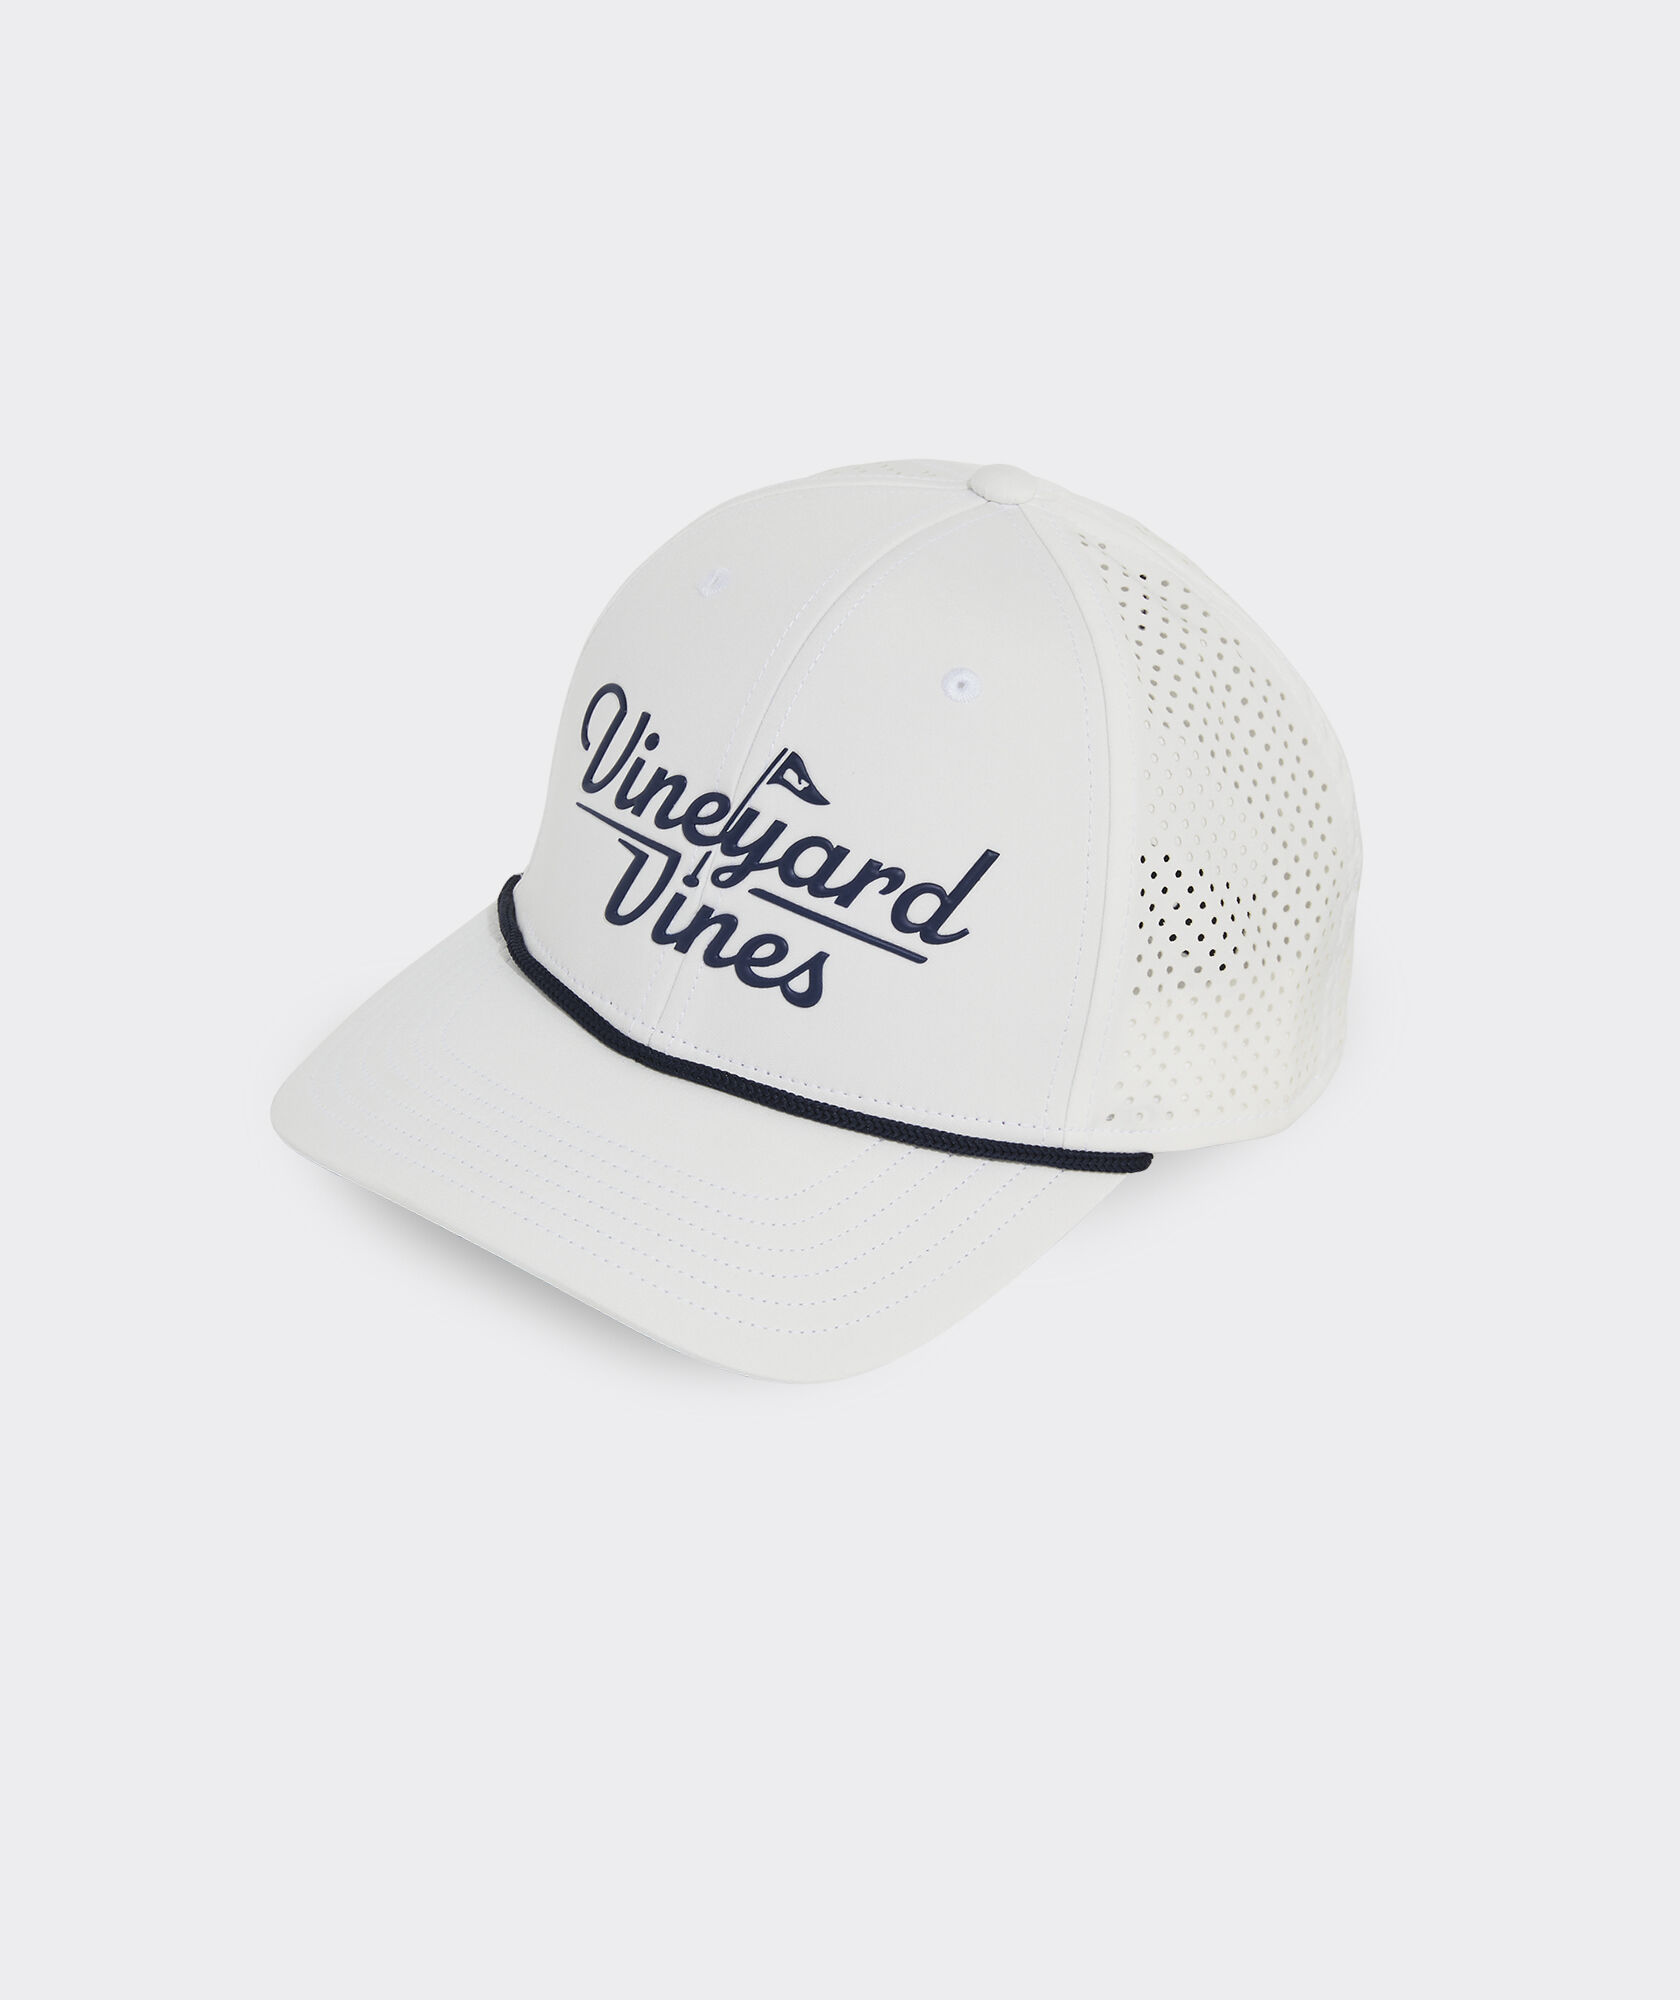 Vineyard Vines Golf Rope Hat